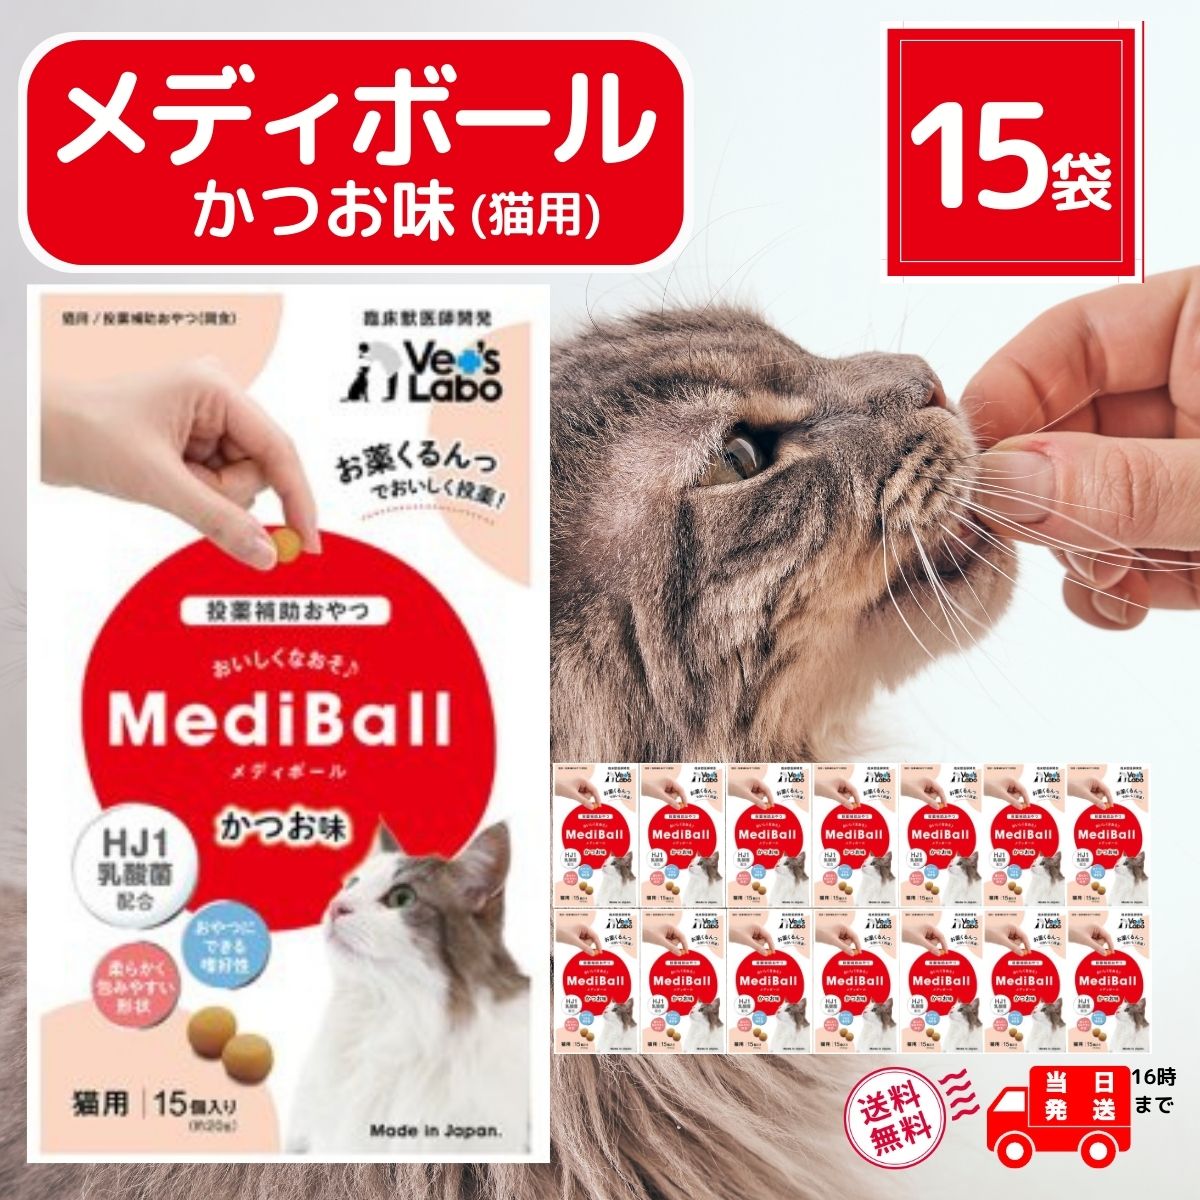 メディボール 猫 薬 飲ませる おやつ 投薬 投薬補助 かつお 15個入 × 15袋 mediball